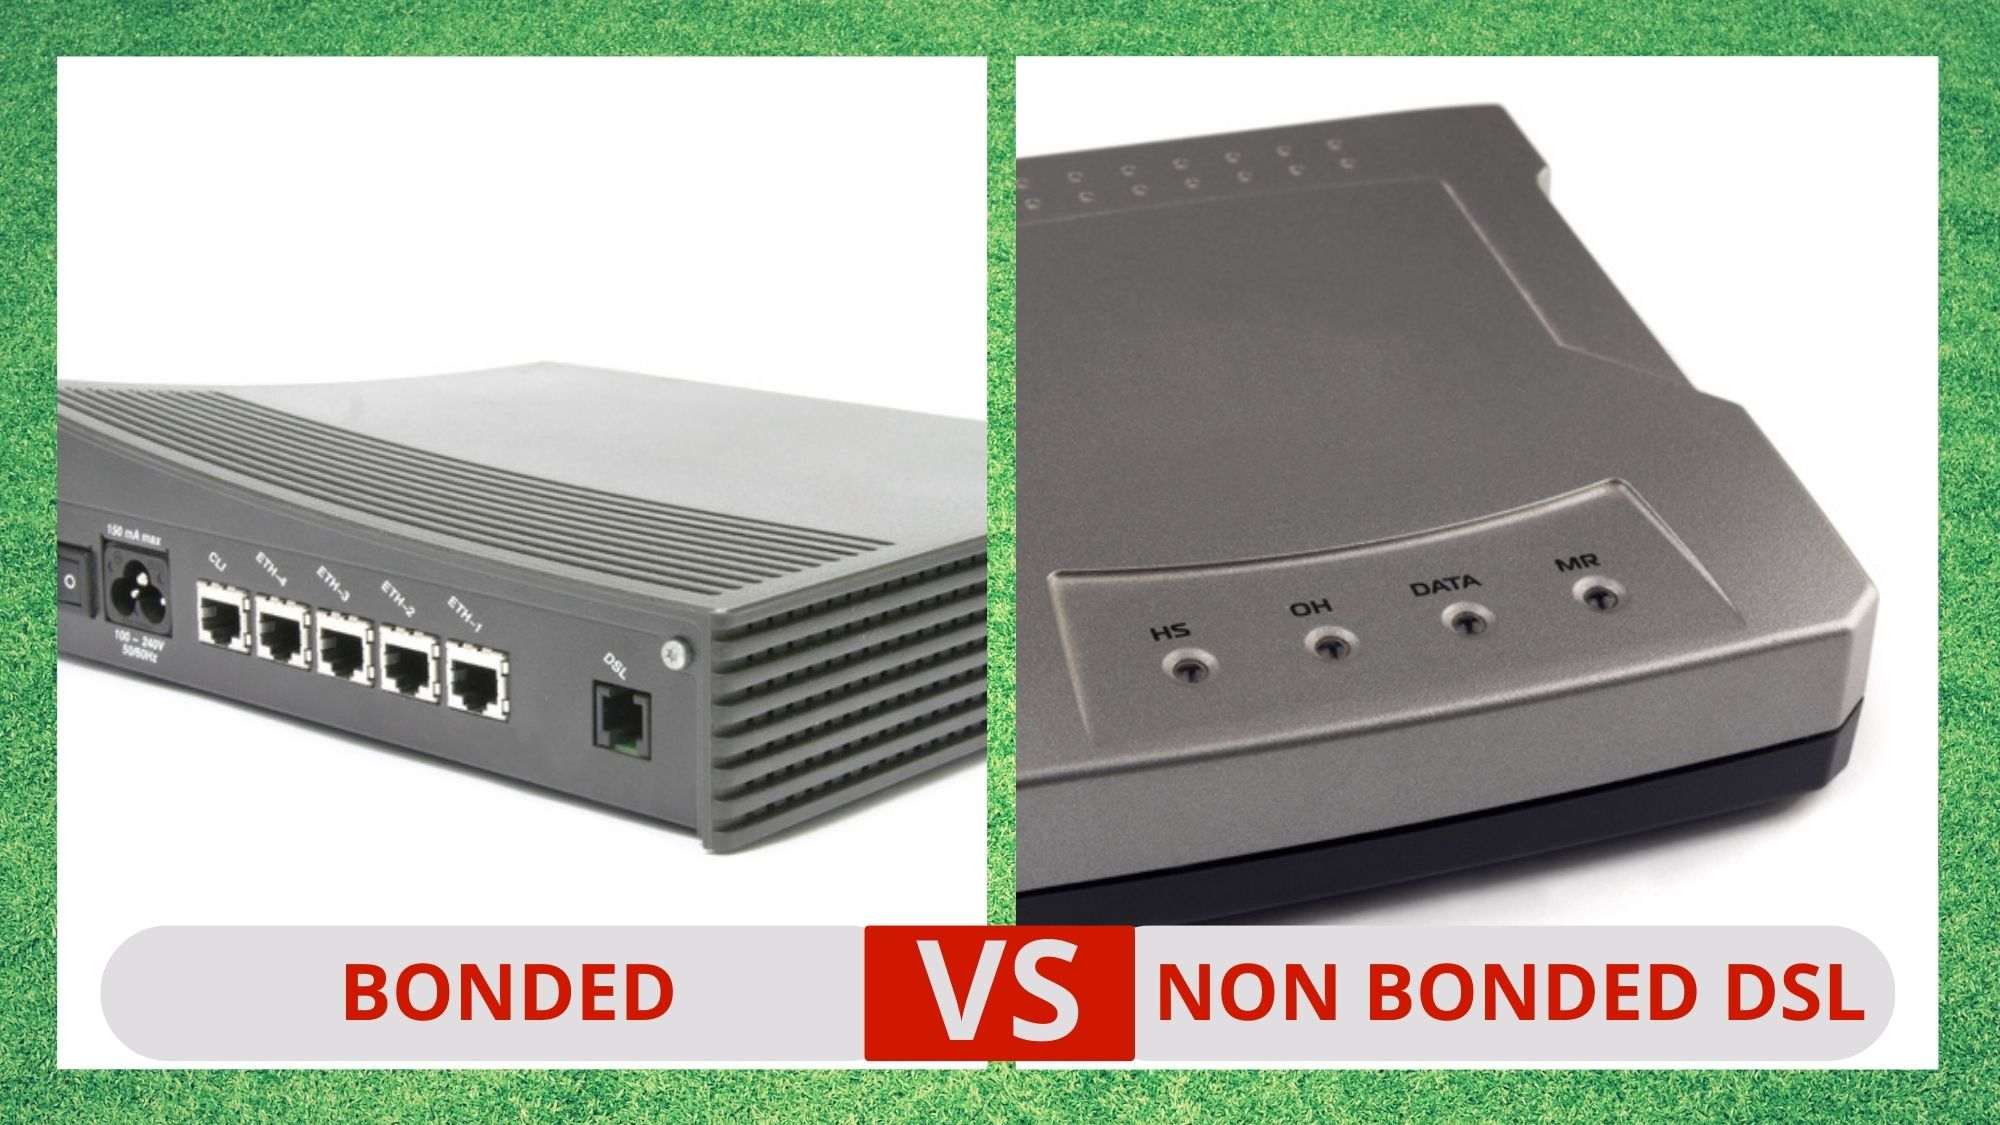 bonded vs non bonded dsl